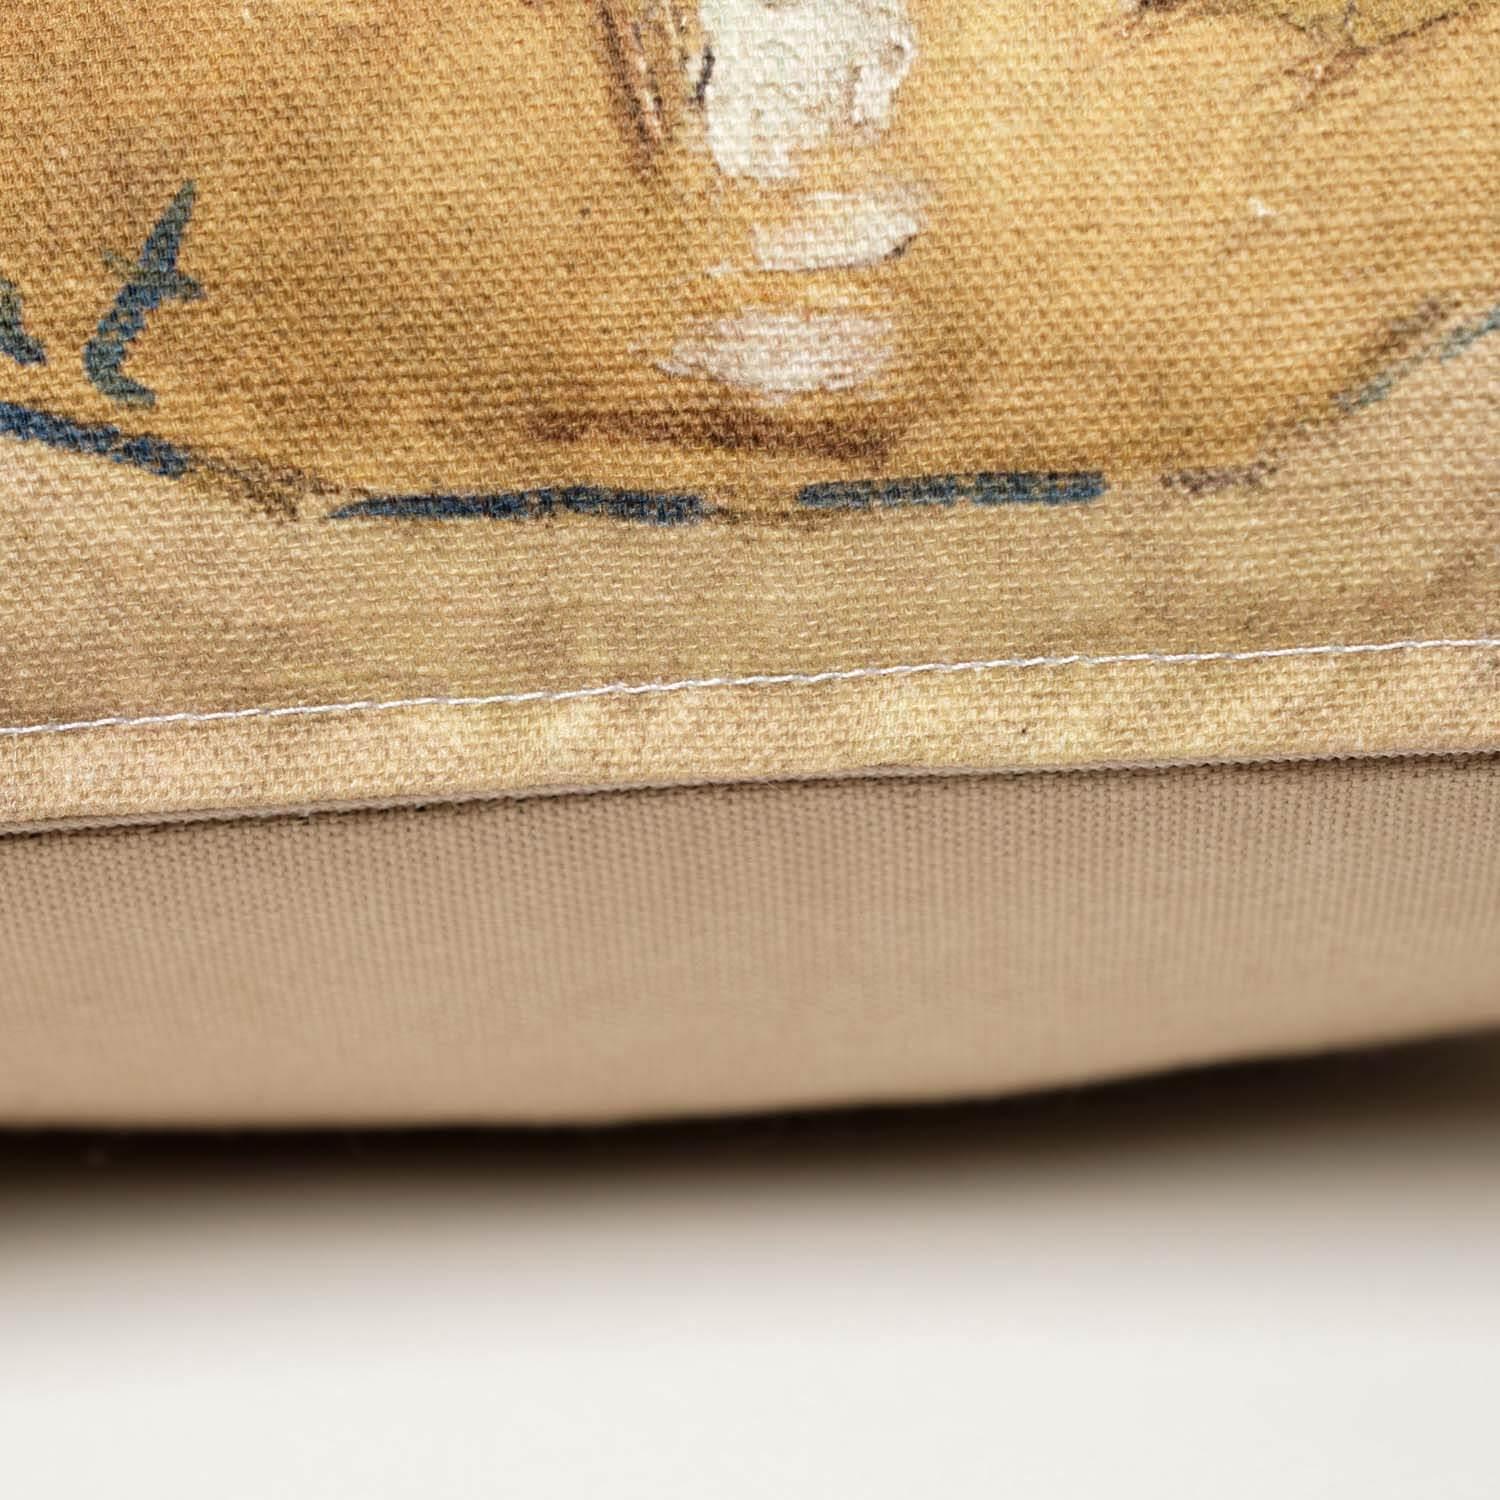 Irises - Monet - National Gallery Cushion - Handmade Cushions UK - WeLoveCushions